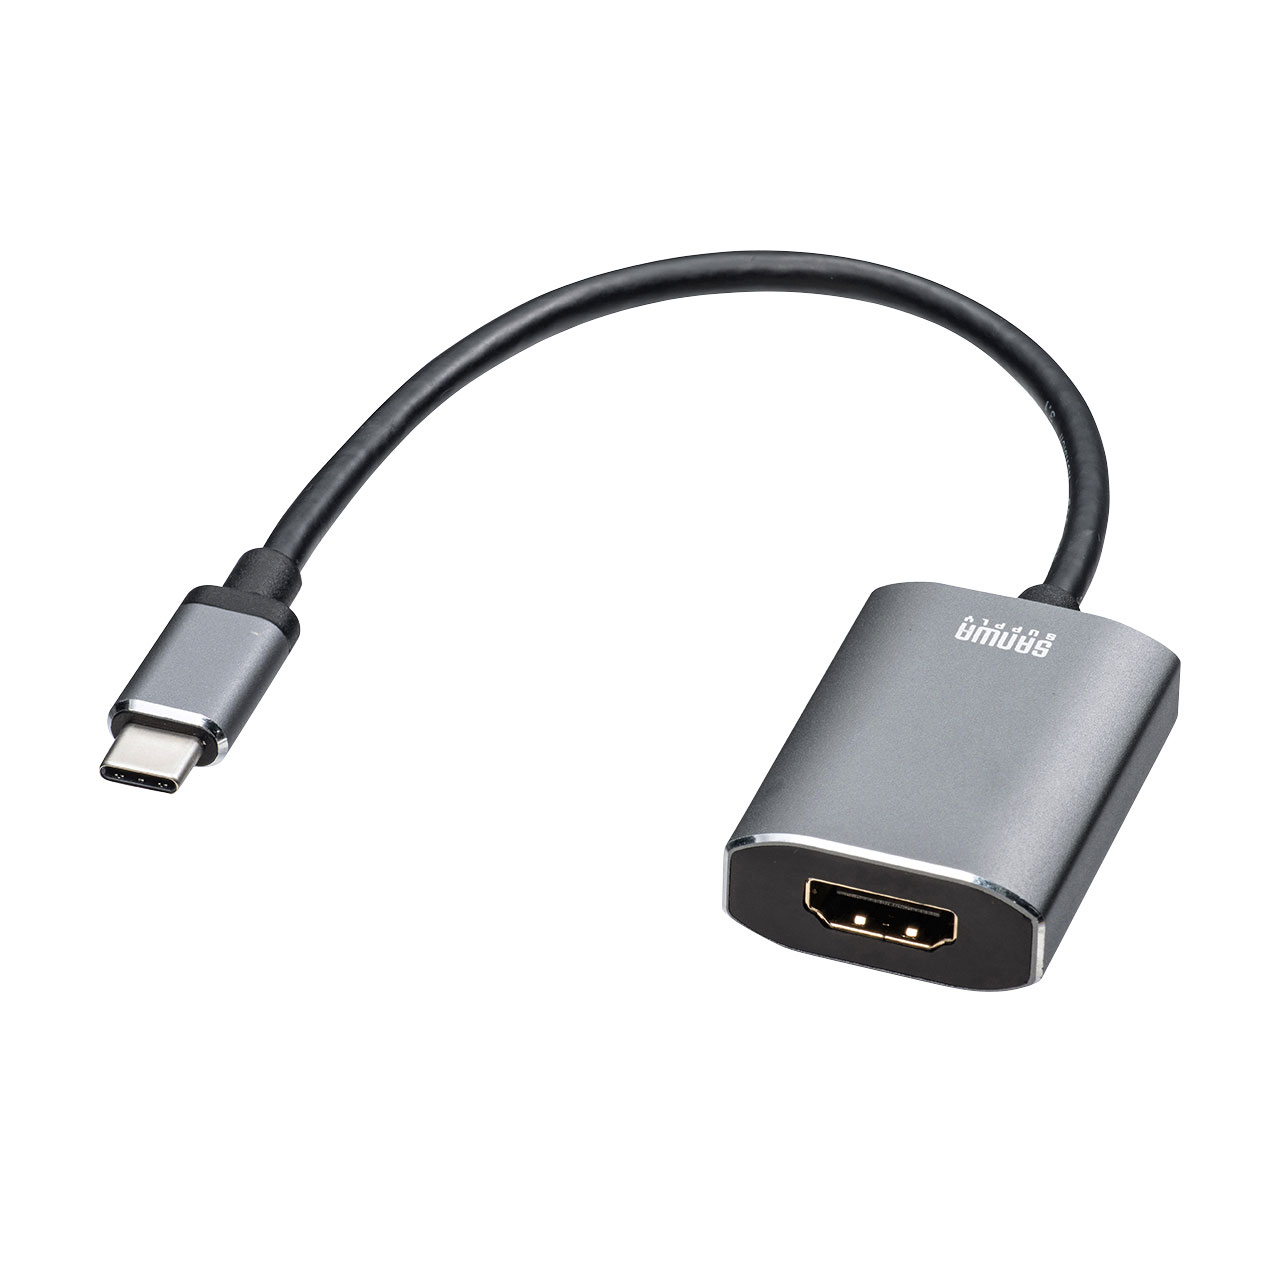 222円 OUTLET SALE HDMI変換アダプタ TYPE D Micro HDMI to 変換アダプタ Ver1.4 ハイビジョン1080pサポート HDMIアダプター micro